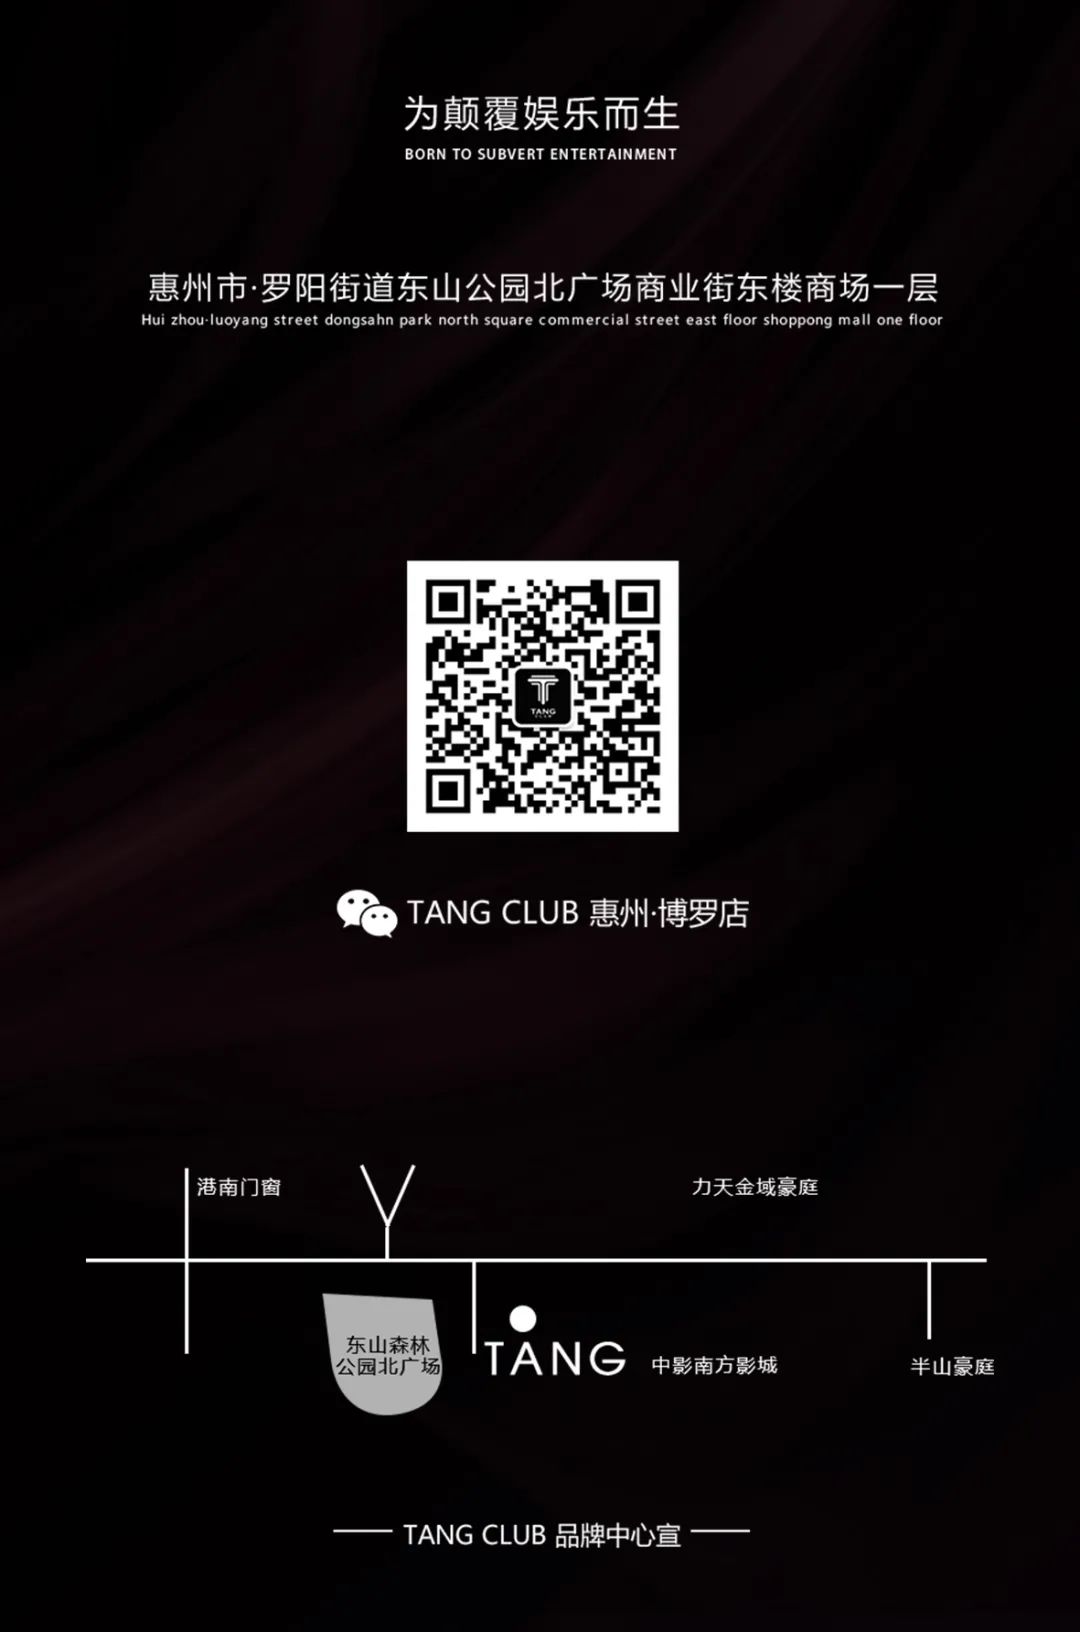 TANG CLUB｜2020.09.19 喜力啤酒 特约赞助 TNT室内电音节 肾上腺素 极致引爆-博罗TANG CLUB/TANG酒吧